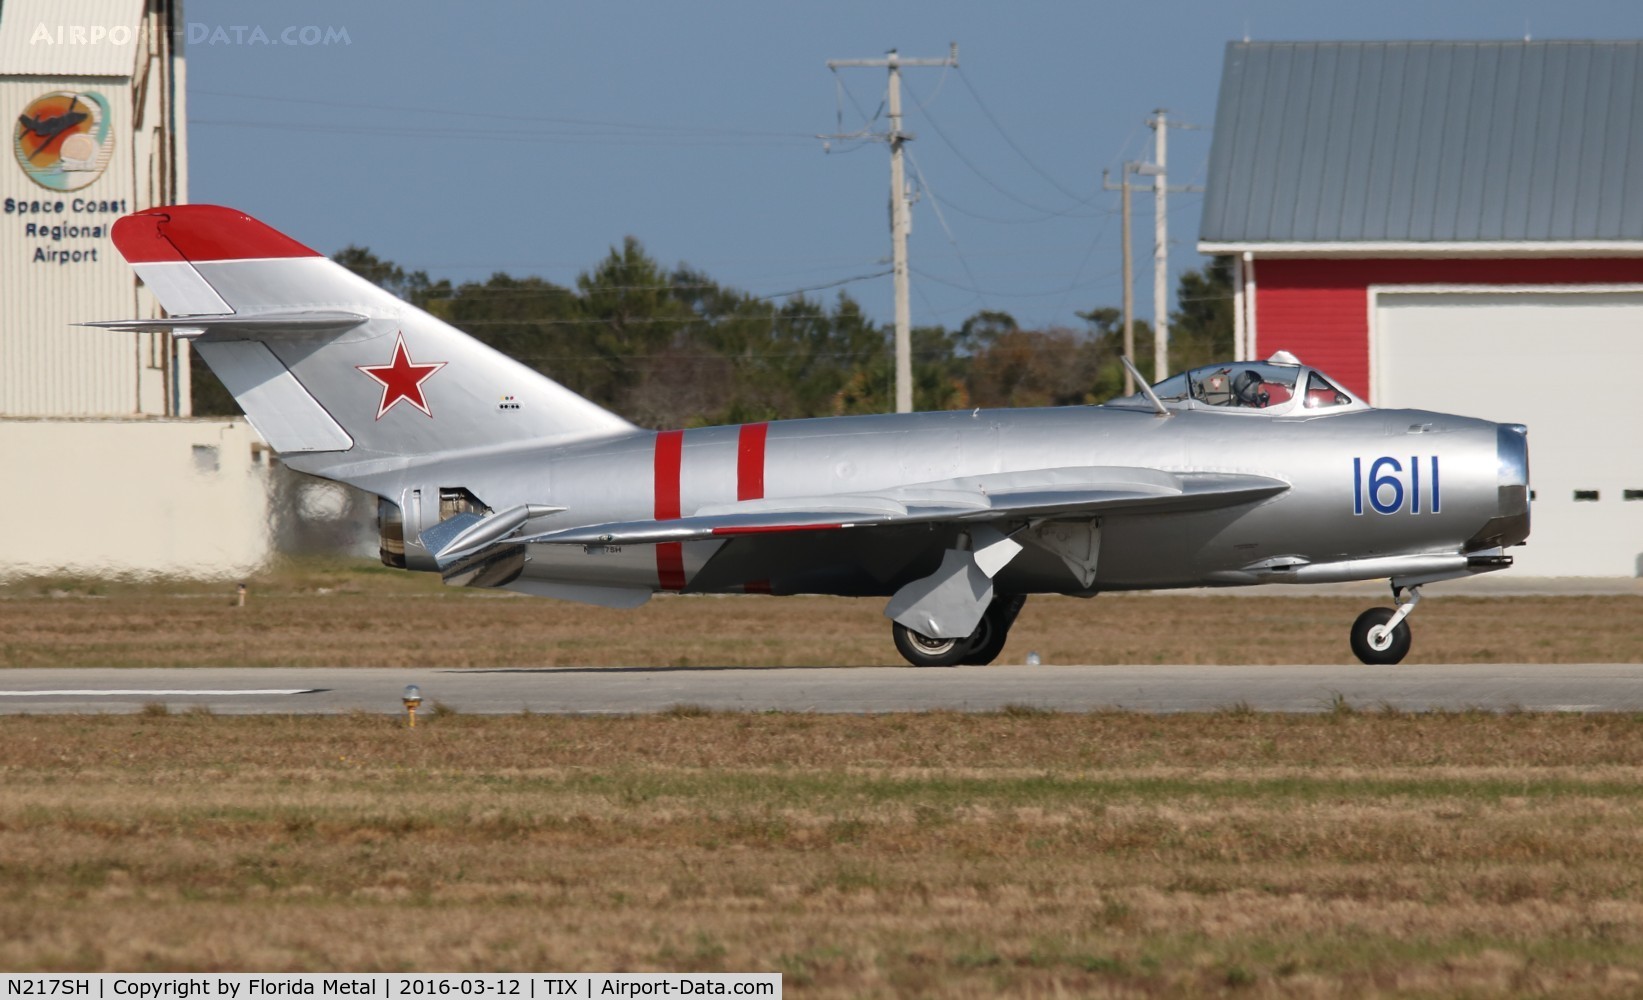 N217SH, 1959 PZL-Mielec Lim-5 (MiG-17F) C/N 1C1611, Mig 17